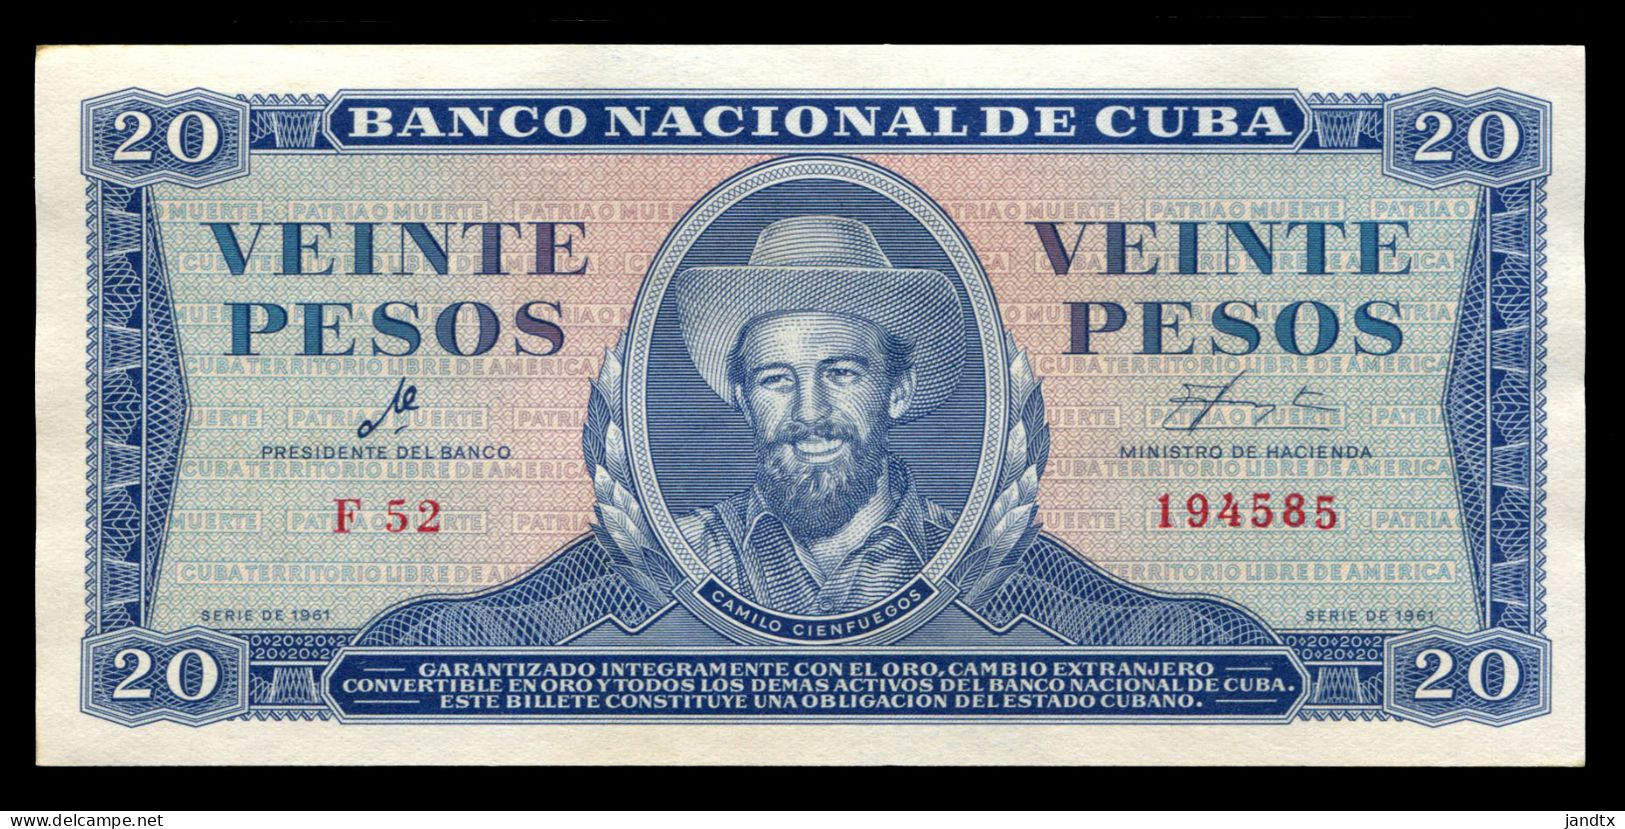 CUBA 20 PESOS 1961 FIRMA DEL CHE SC- AUNC - Kuba